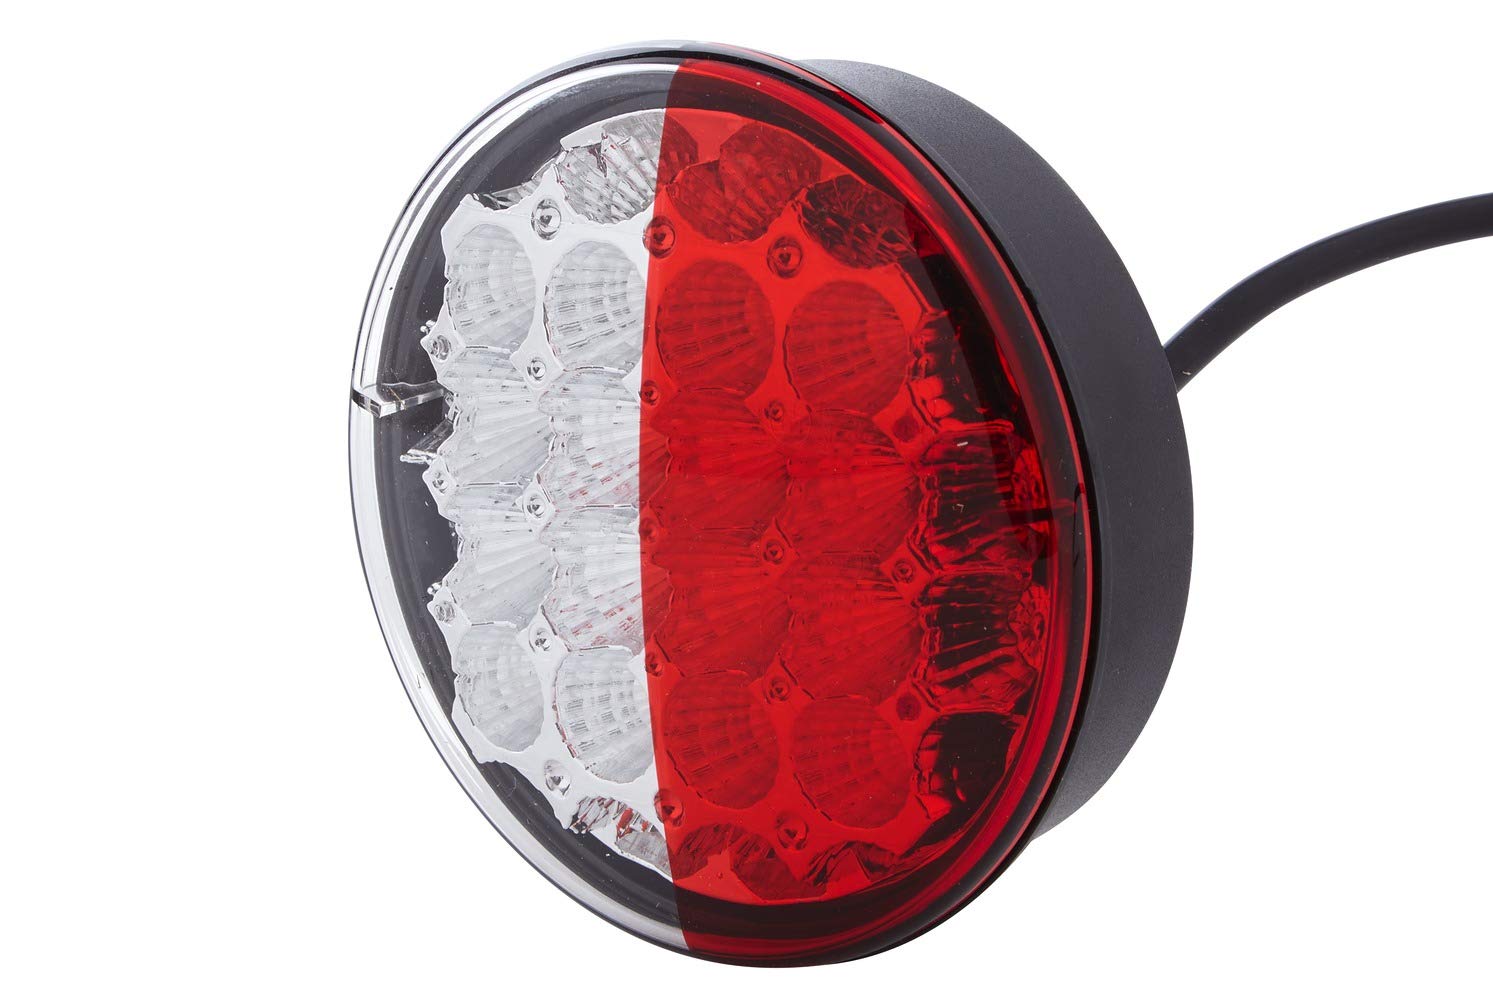 HELLA Rückleuchte - LED - Anhänger Beleuchtung - 12V / 24V - Anbau/geschraubt - ECE/ADR/GGVS - Lichtscheibenfarbe: rot/glasklar - Kabel: 500mm - Stecker: offene Kabelenden - 2SD 344 200-071 von Hella